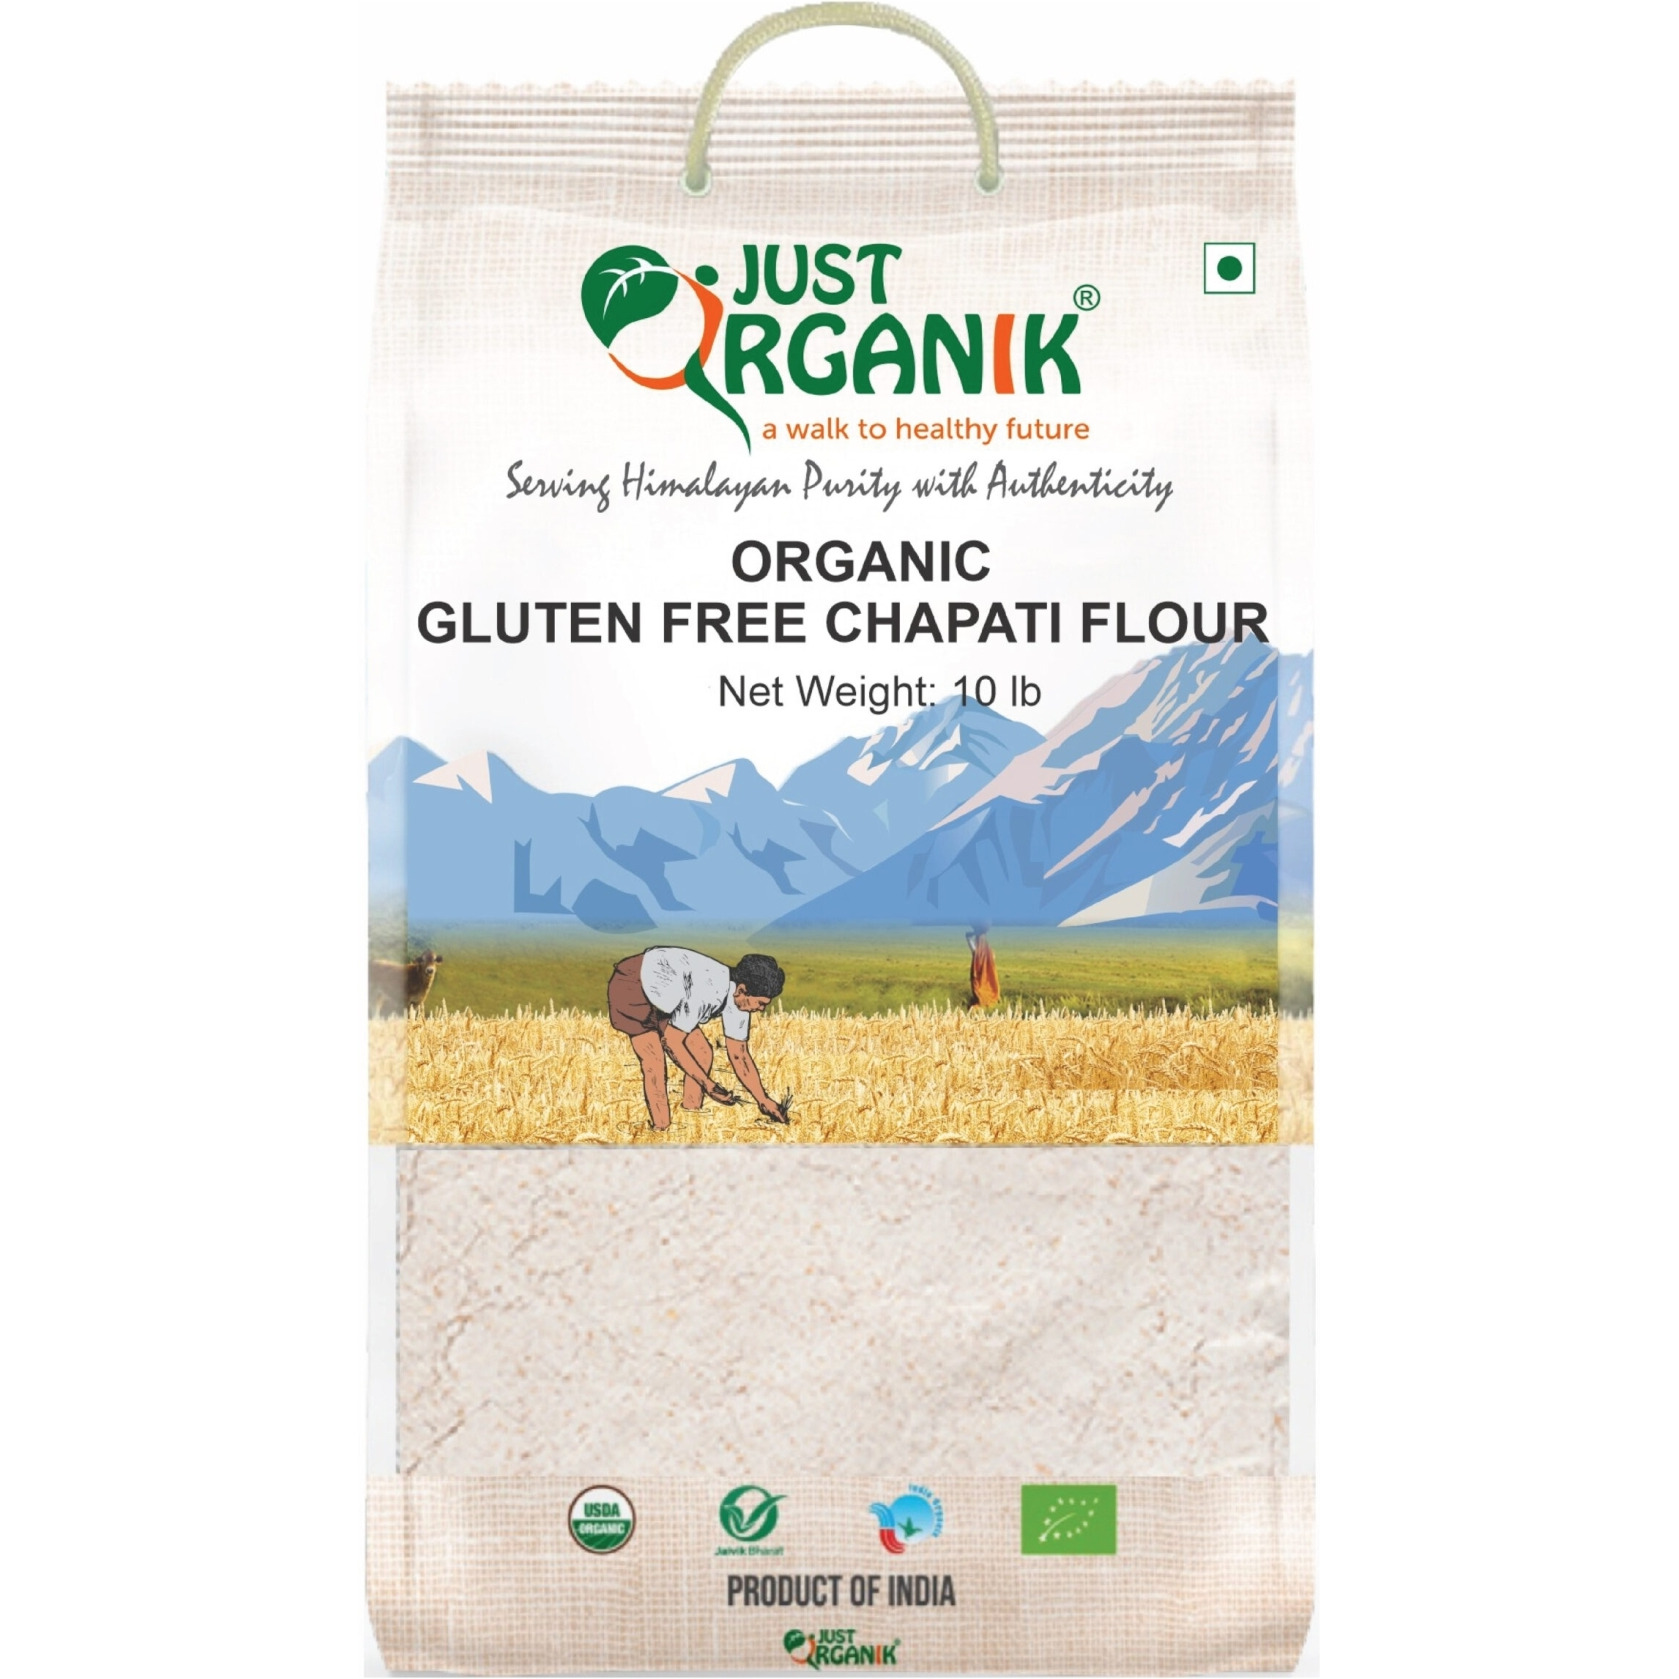 Just Organik Organic Gluten Free Chapati Flour 10 lbs